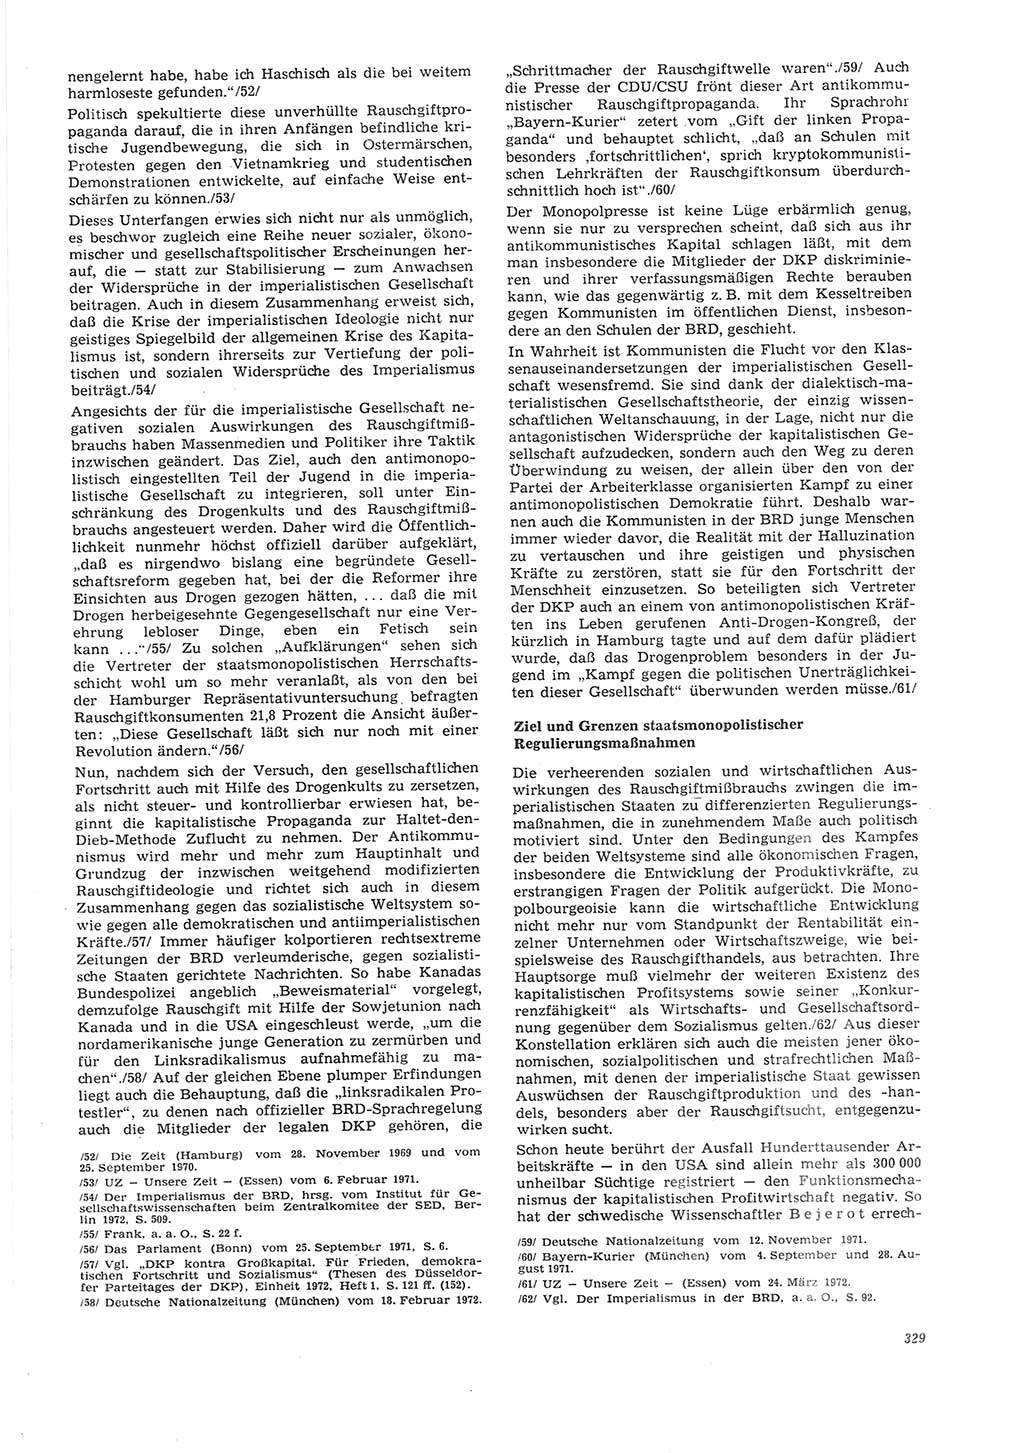 Neue Justiz (NJ), Zeitschrift für Recht und Rechtswissenschaft [Deutsche Demokratische Republik (DDR)], 26. Jahrgang 1972, Seite 329 (NJ DDR 1972, S. 329)